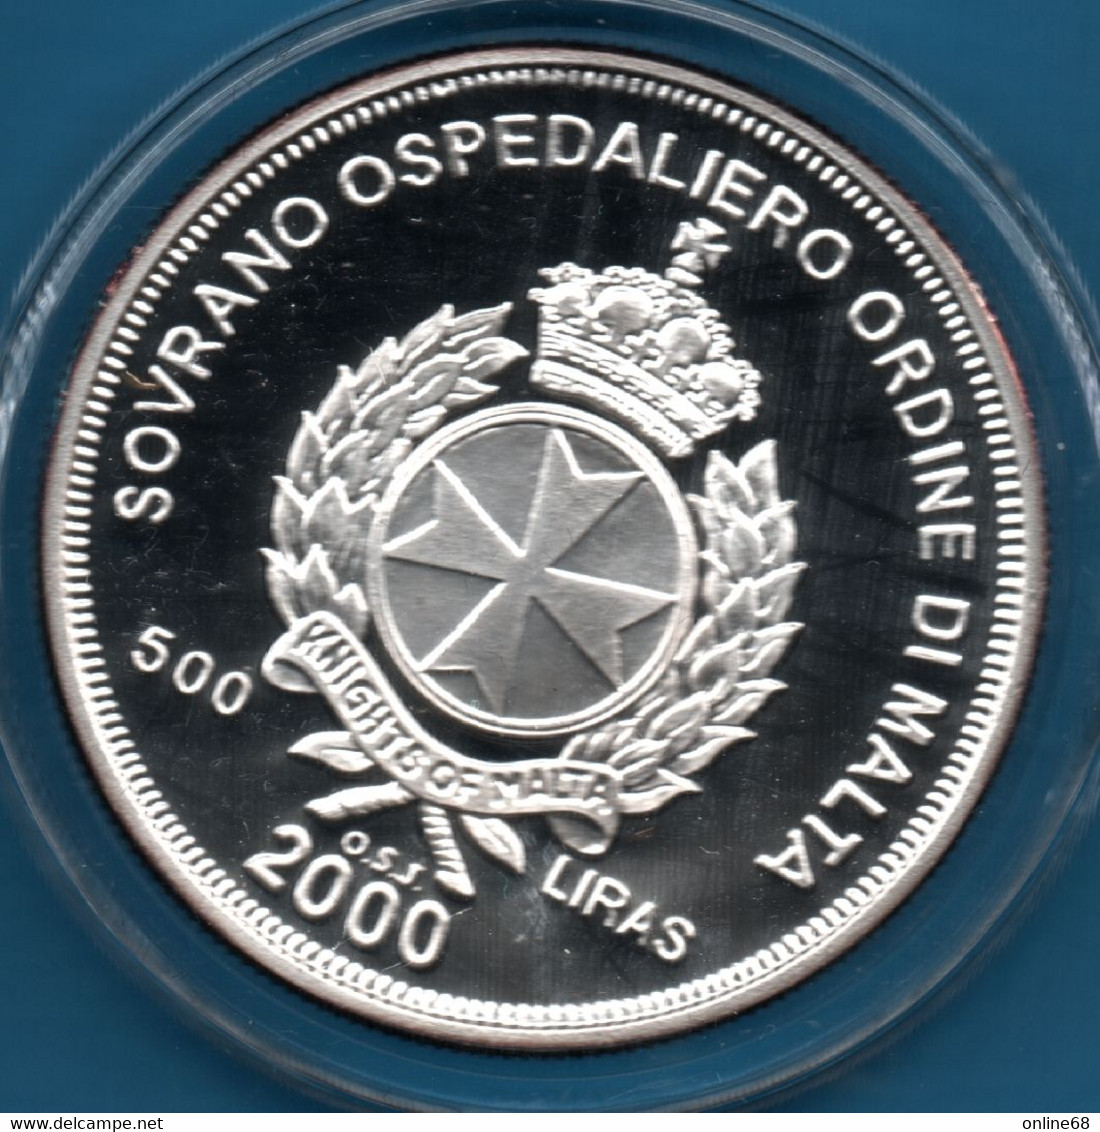 ORDINE DI MALTA 500 LIRAS 2000 KM# X# 304  Argent 999‰ Silver  PROOF THE GREAT SIEGE - Malte (Ordre De)